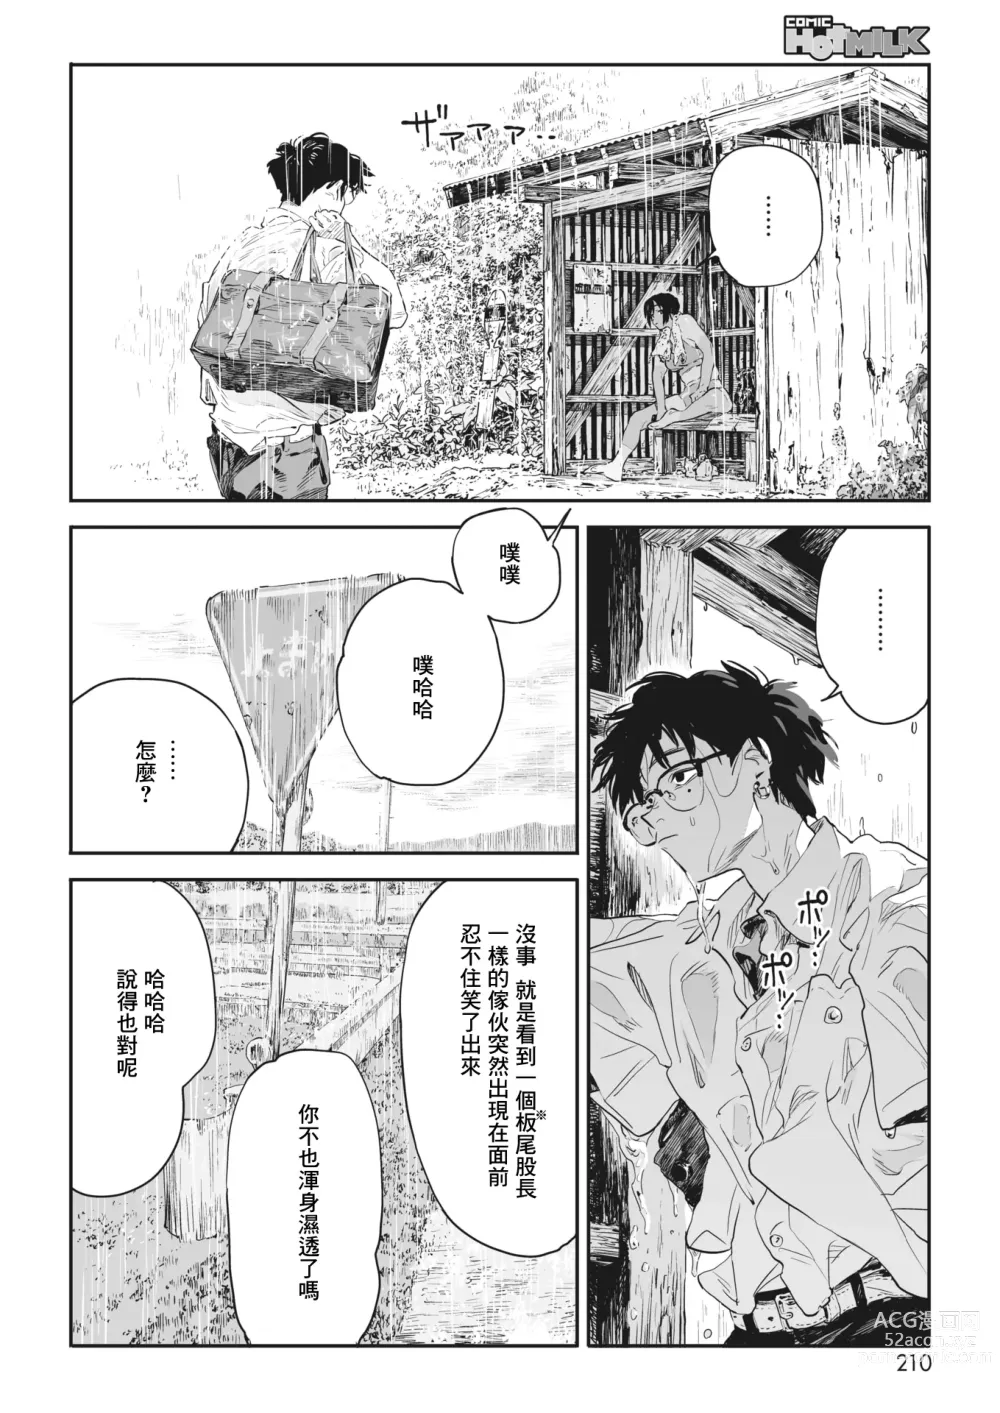 Page 7 of manga 蜗牛